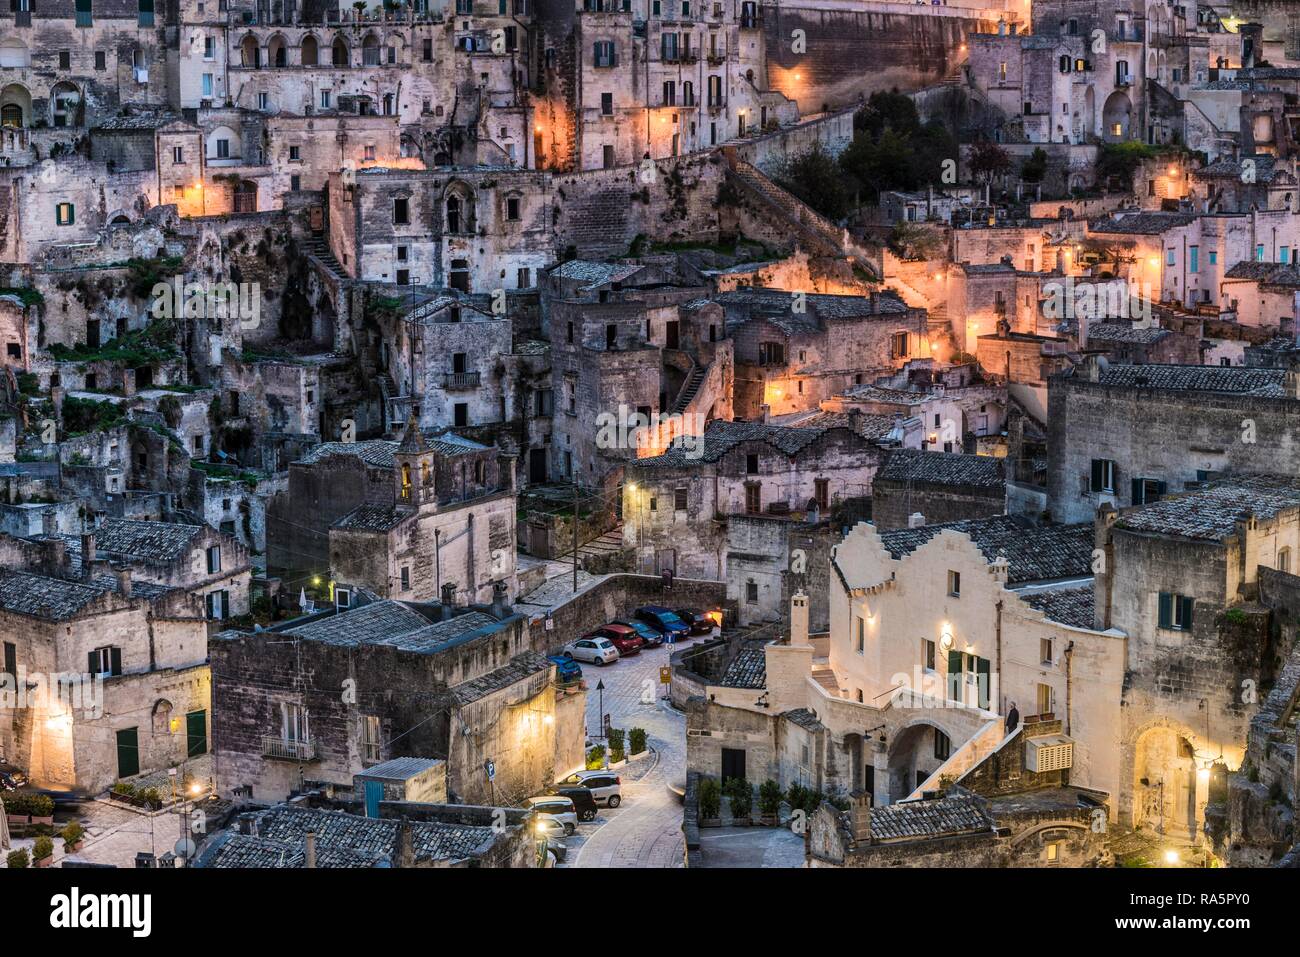 Old town district at dusk, Matera, Basilicata, Italy Stock Photo